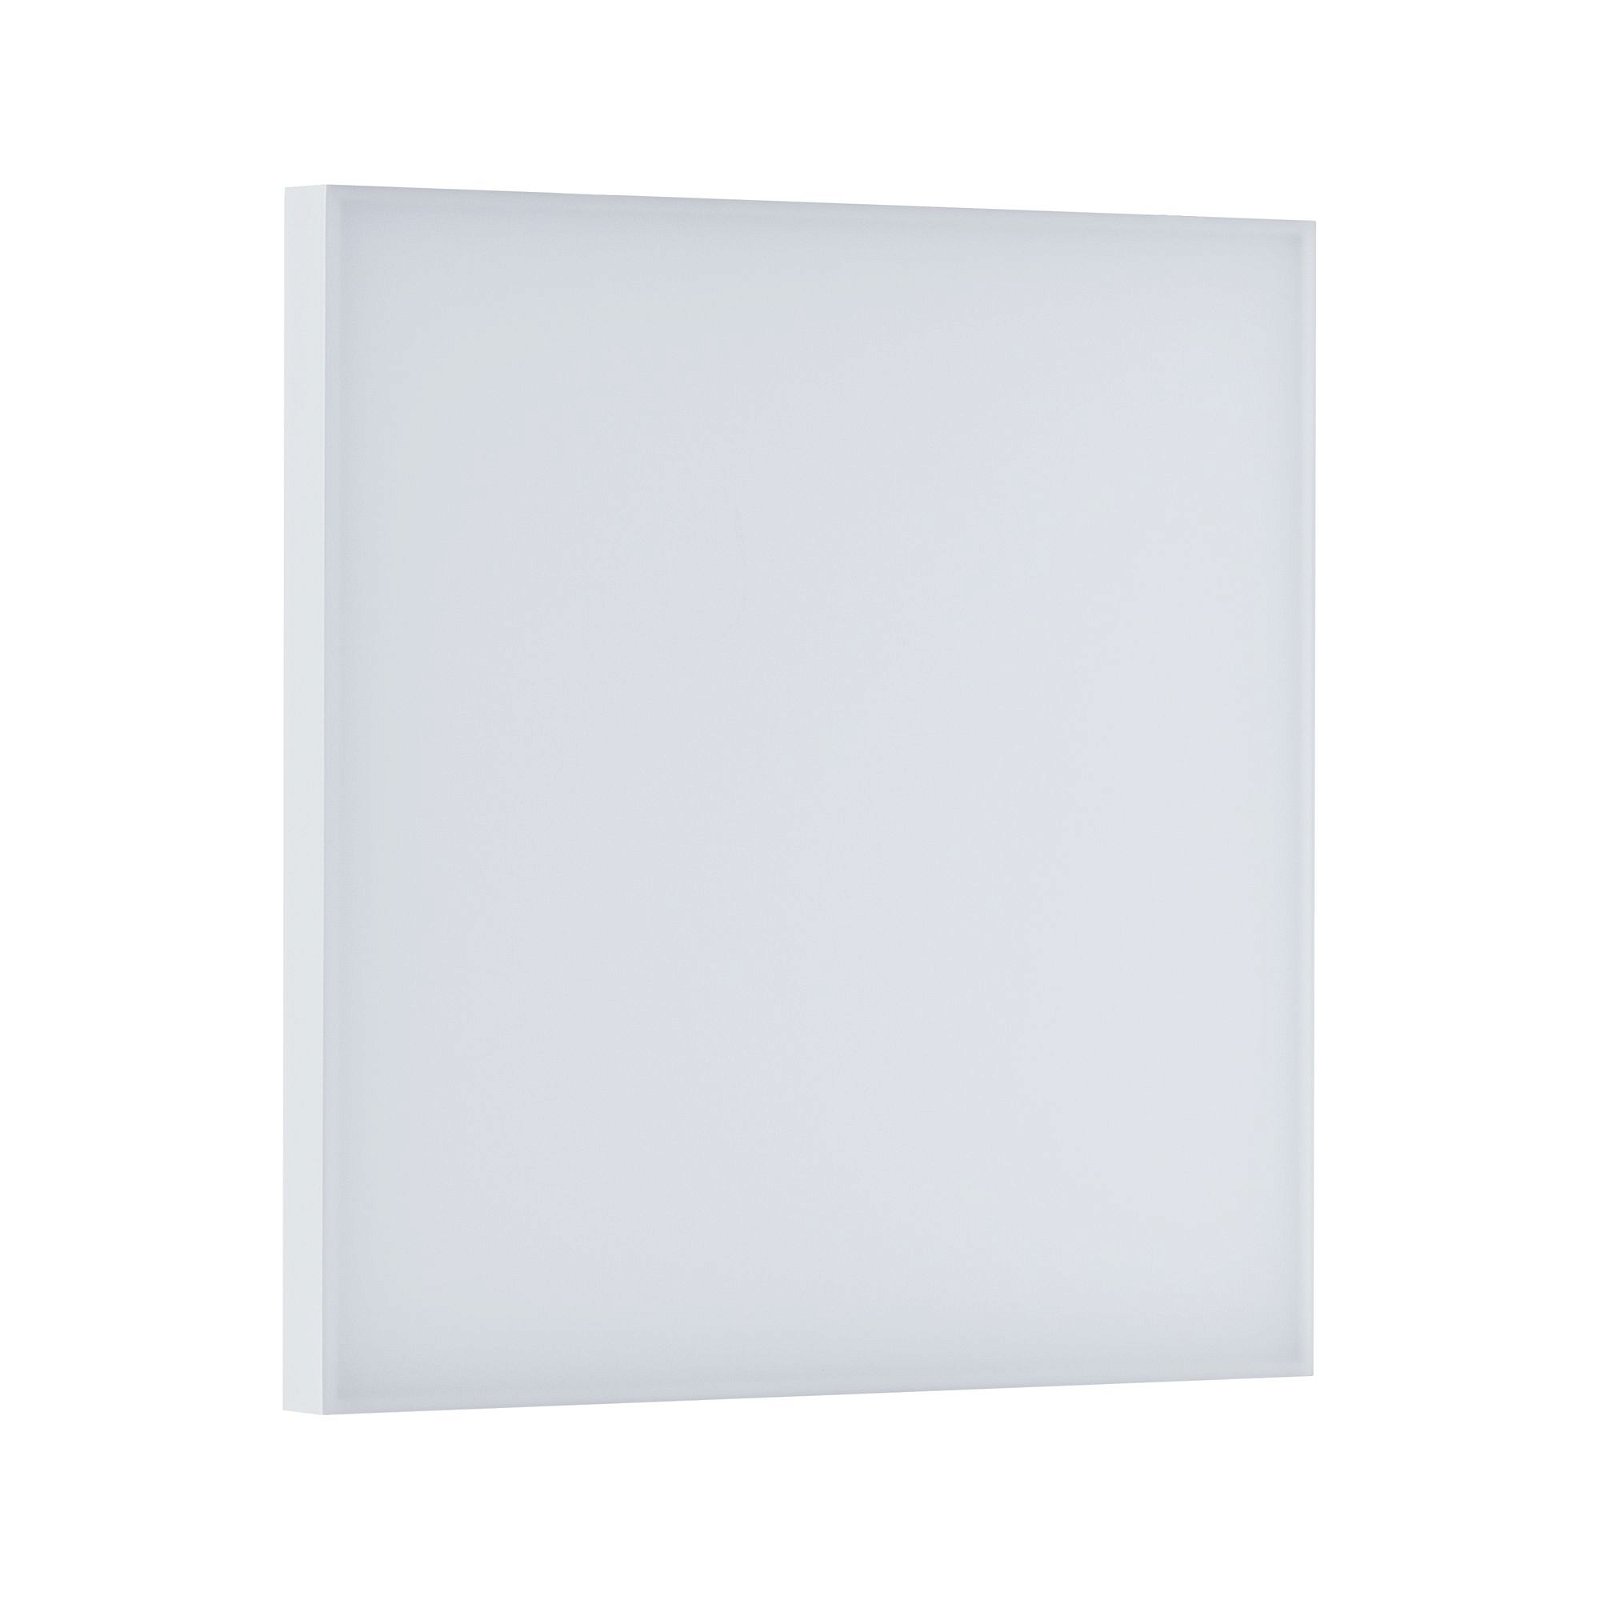 LED Panel Smart Home Zigbee Velora square 295x295mm Tunable White Matt white